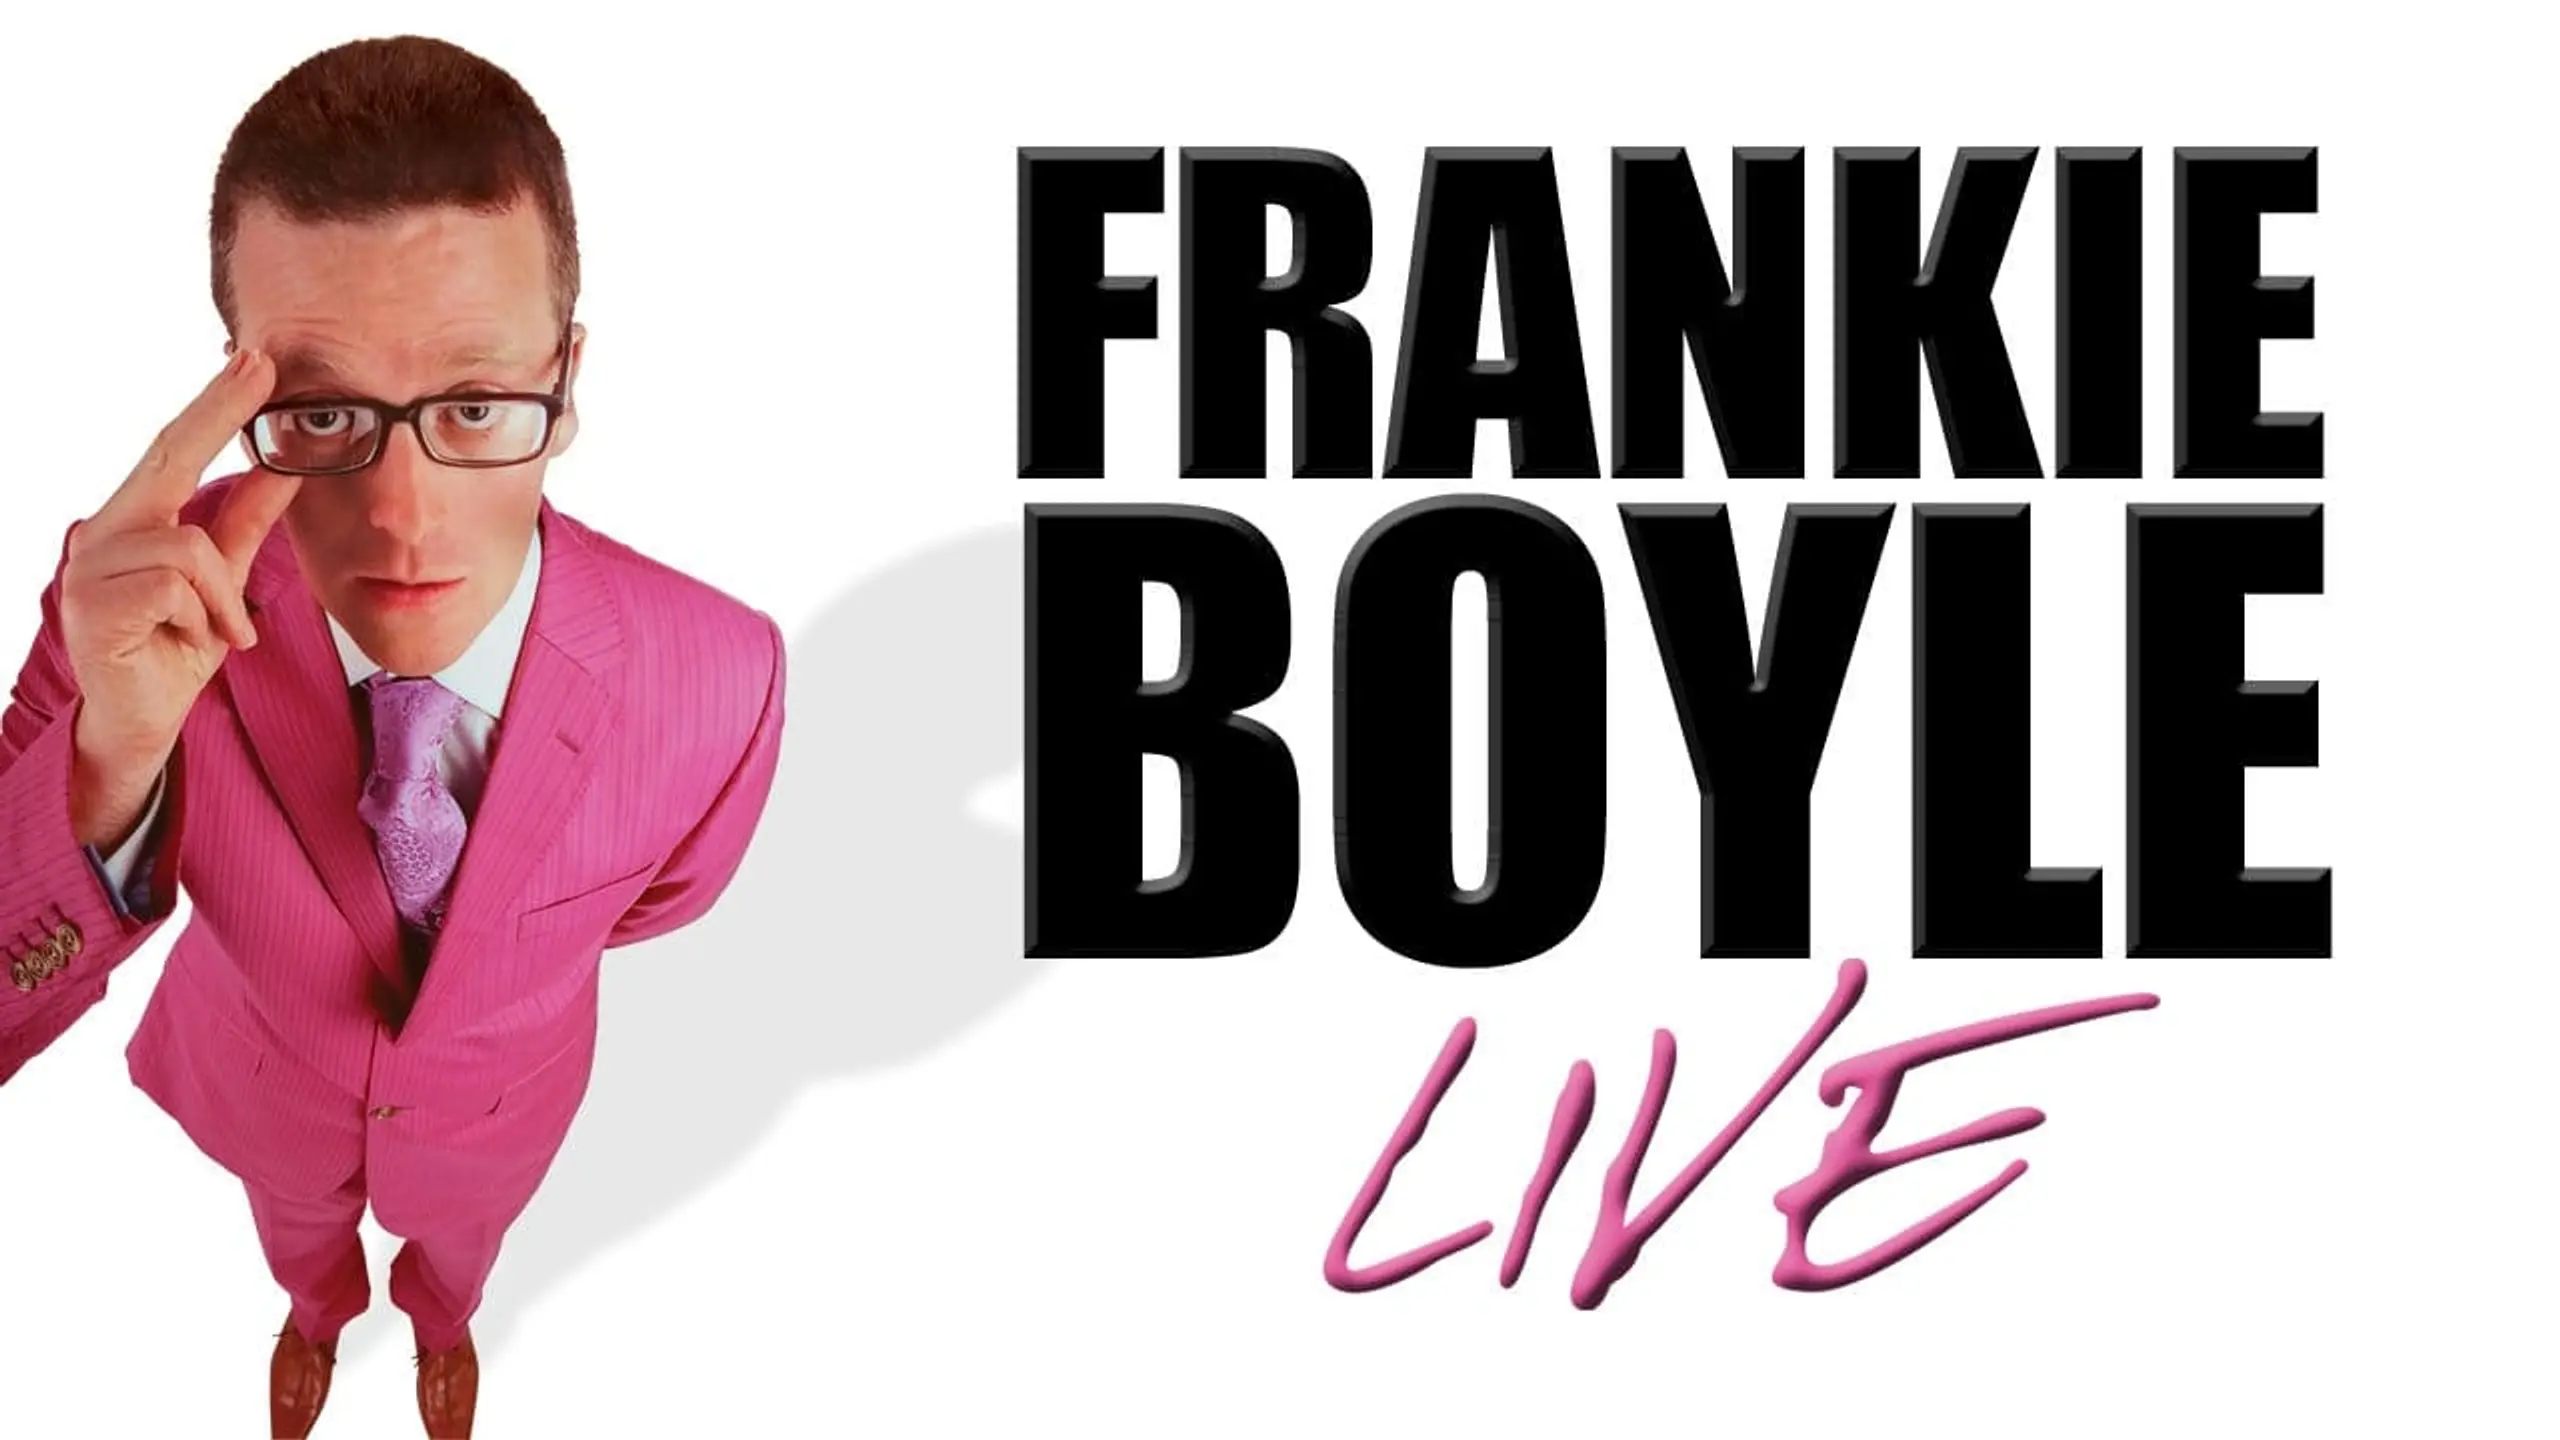 Frankie Boyle: Live